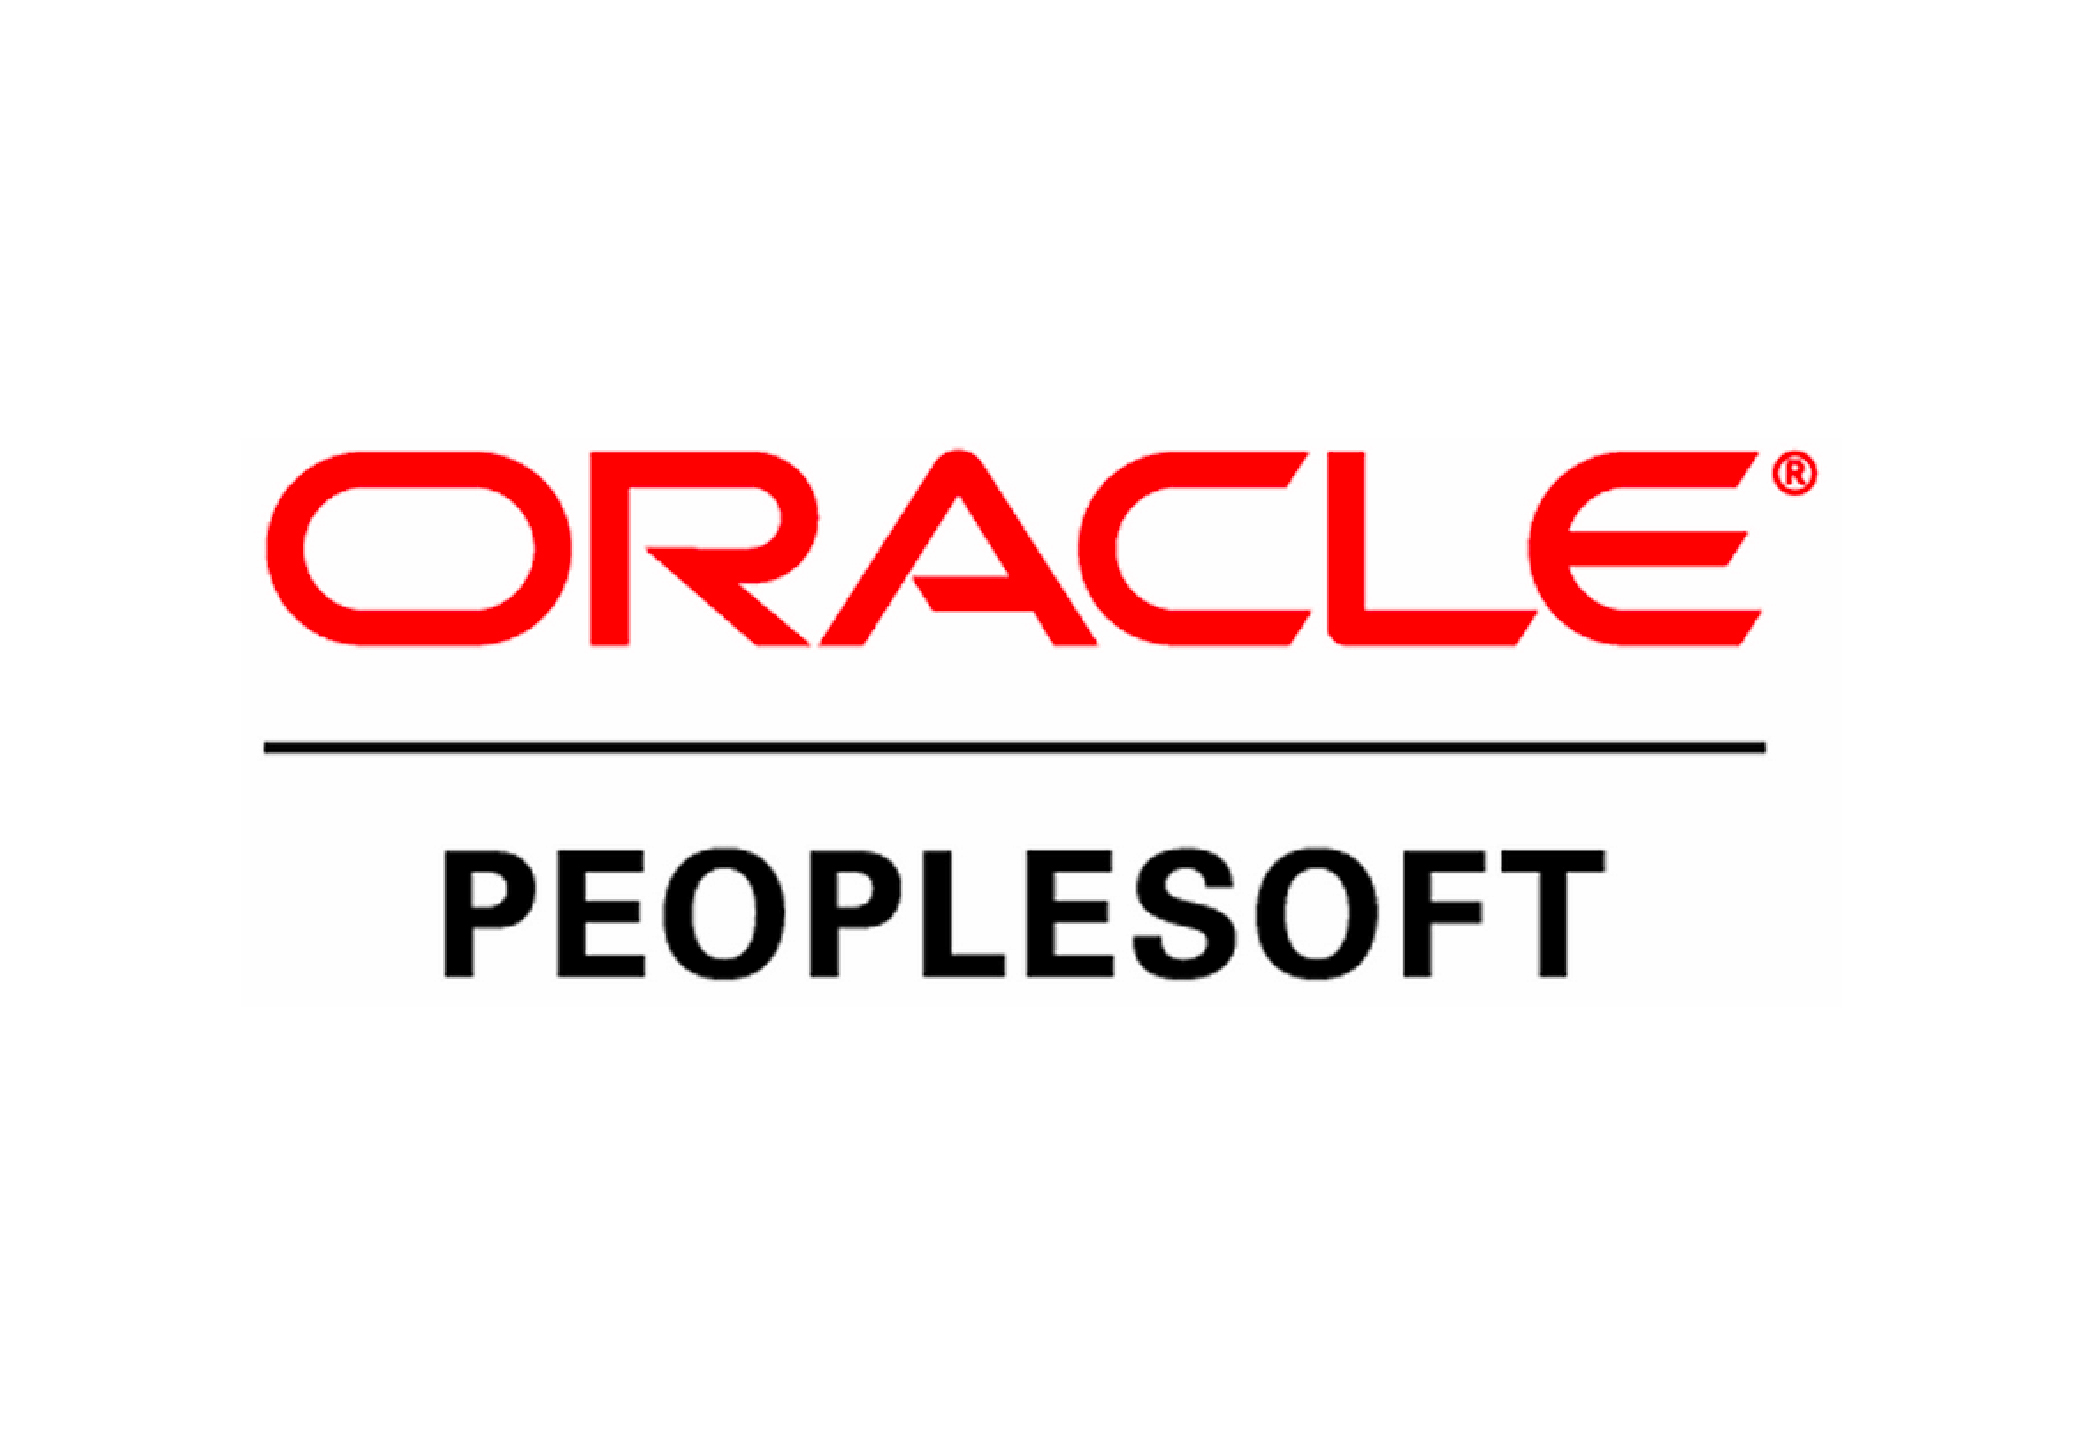 Oracle PeopleSoft logo